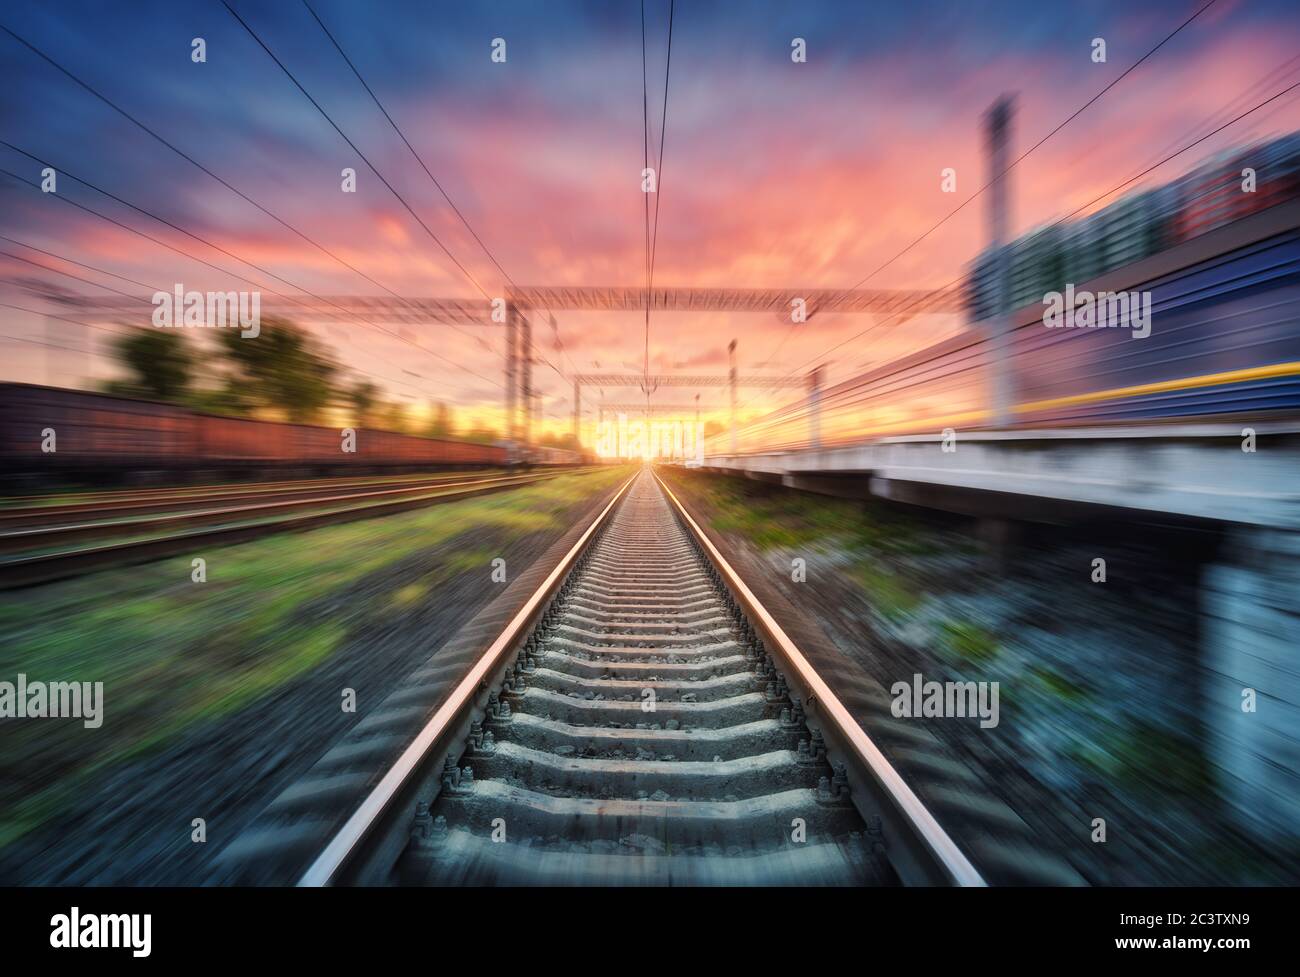 Eisenbahn und der Himmel mit Wolken bei Sonnenuntergang mit Motion blur Effekt Stockfoto